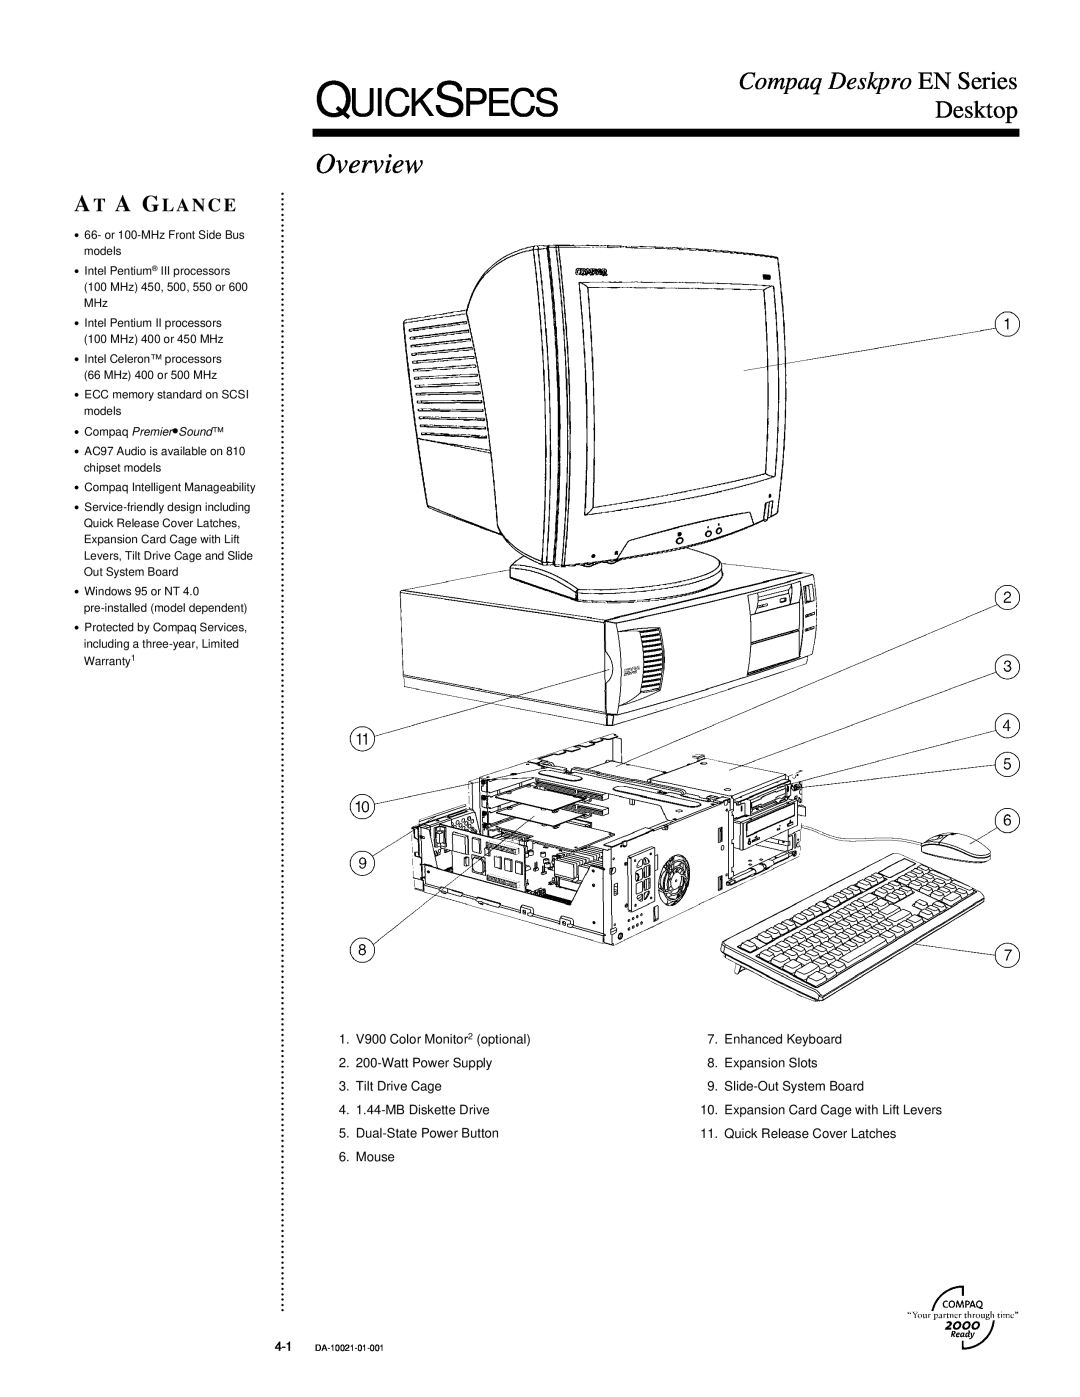 Compaq 4-1 DA-10021-01-001 warranty Quickspecs, Overview, Desktop, Compaq Deskpro EN Series, At A Glance 